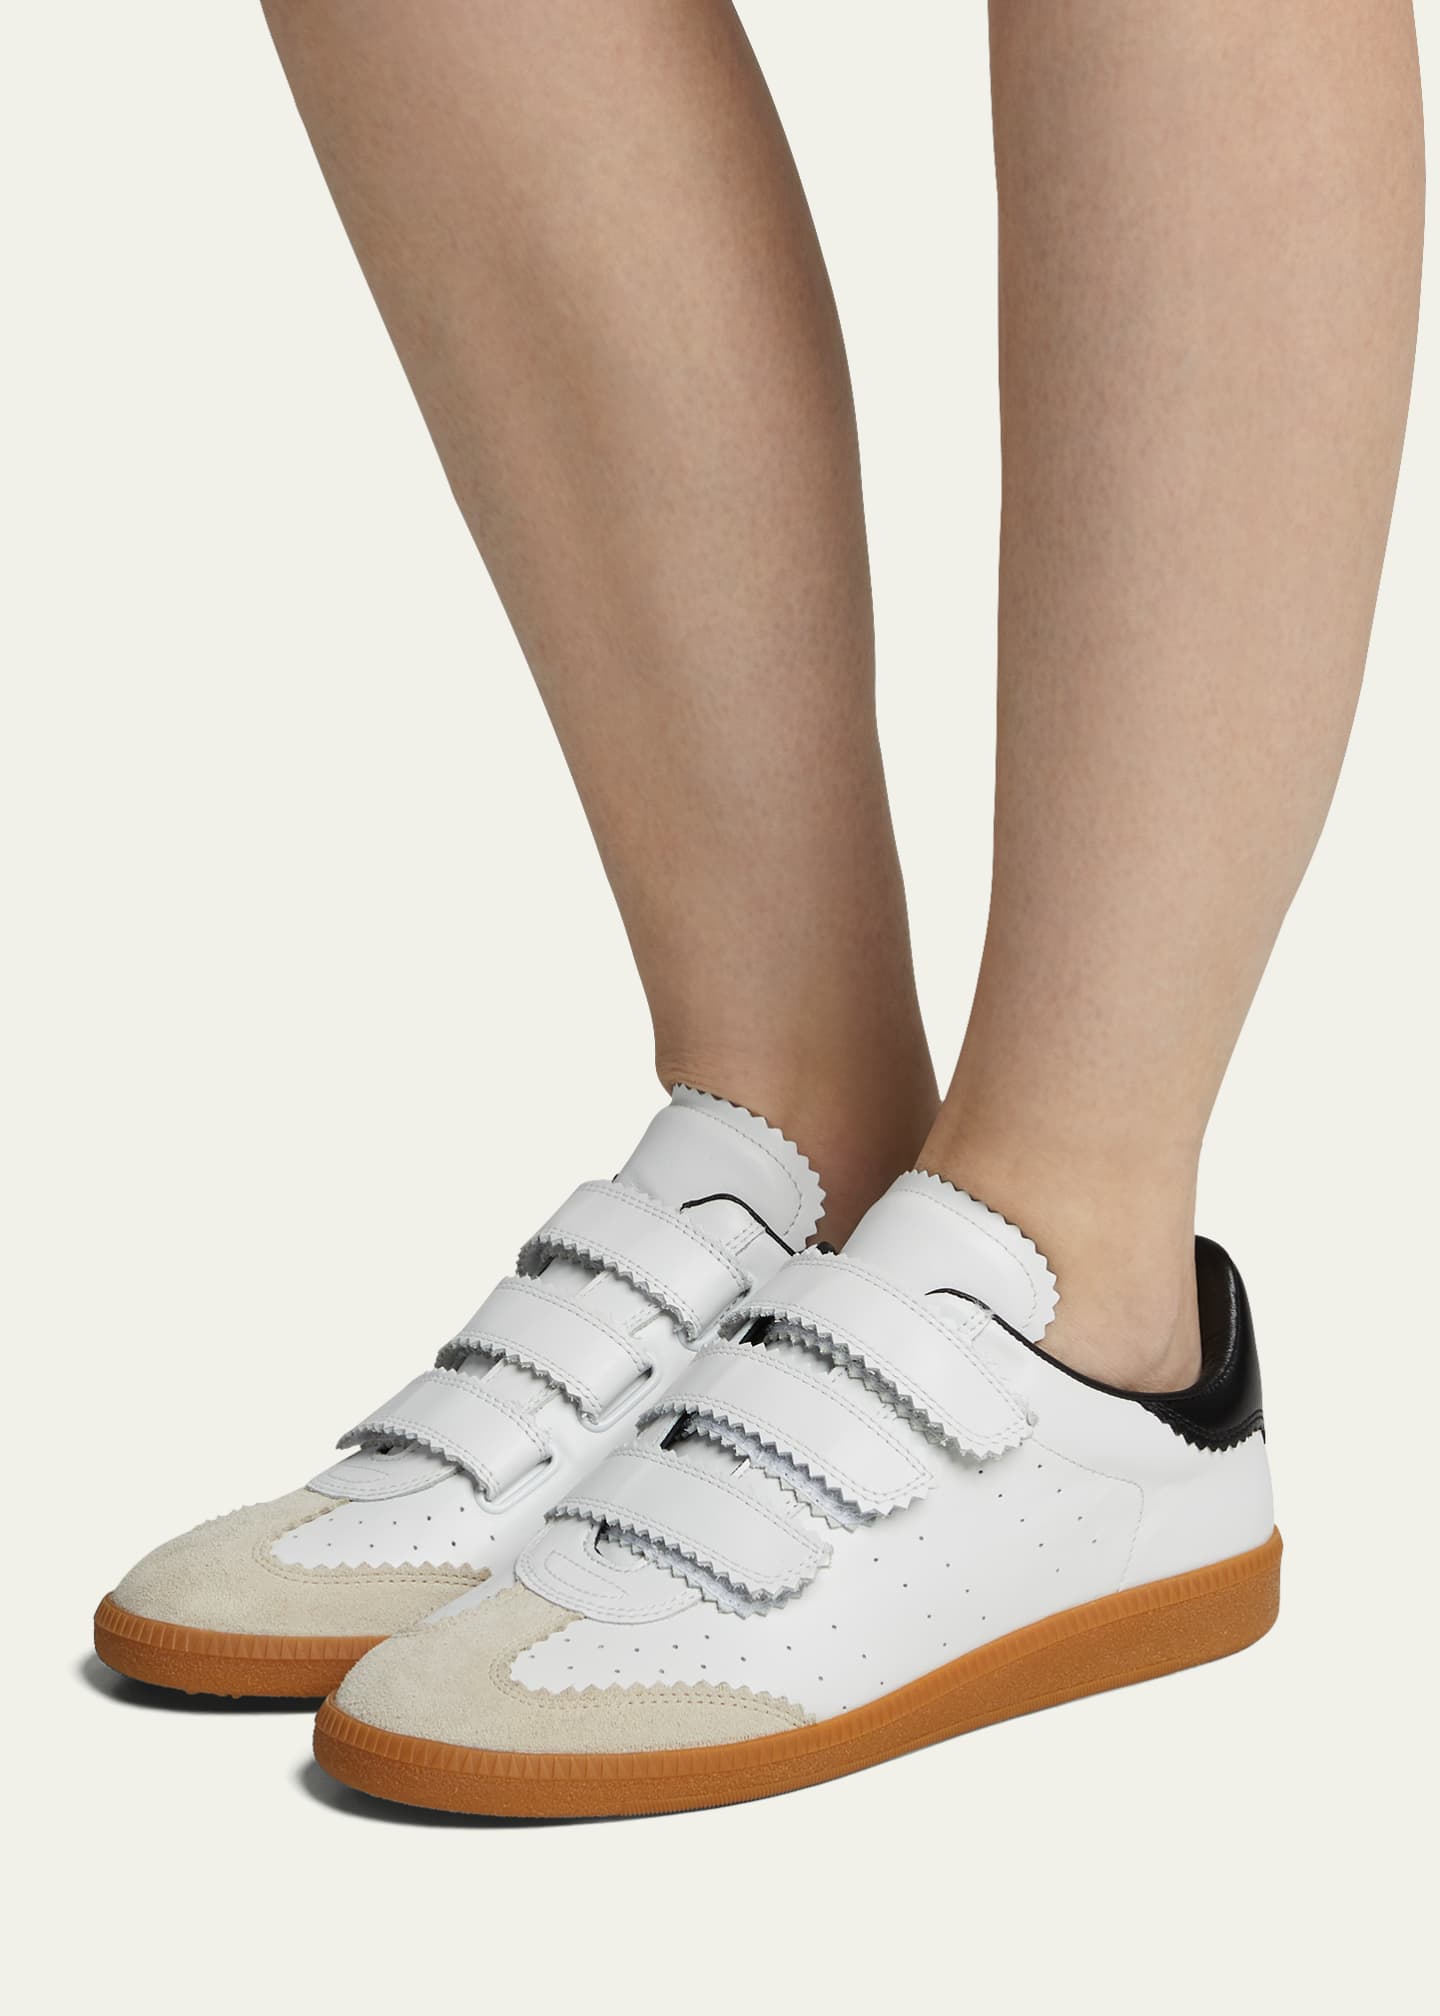 Recensie vork haai Isabel Marant Beth Grip Strap Sneakers - Bergdorf Goodman